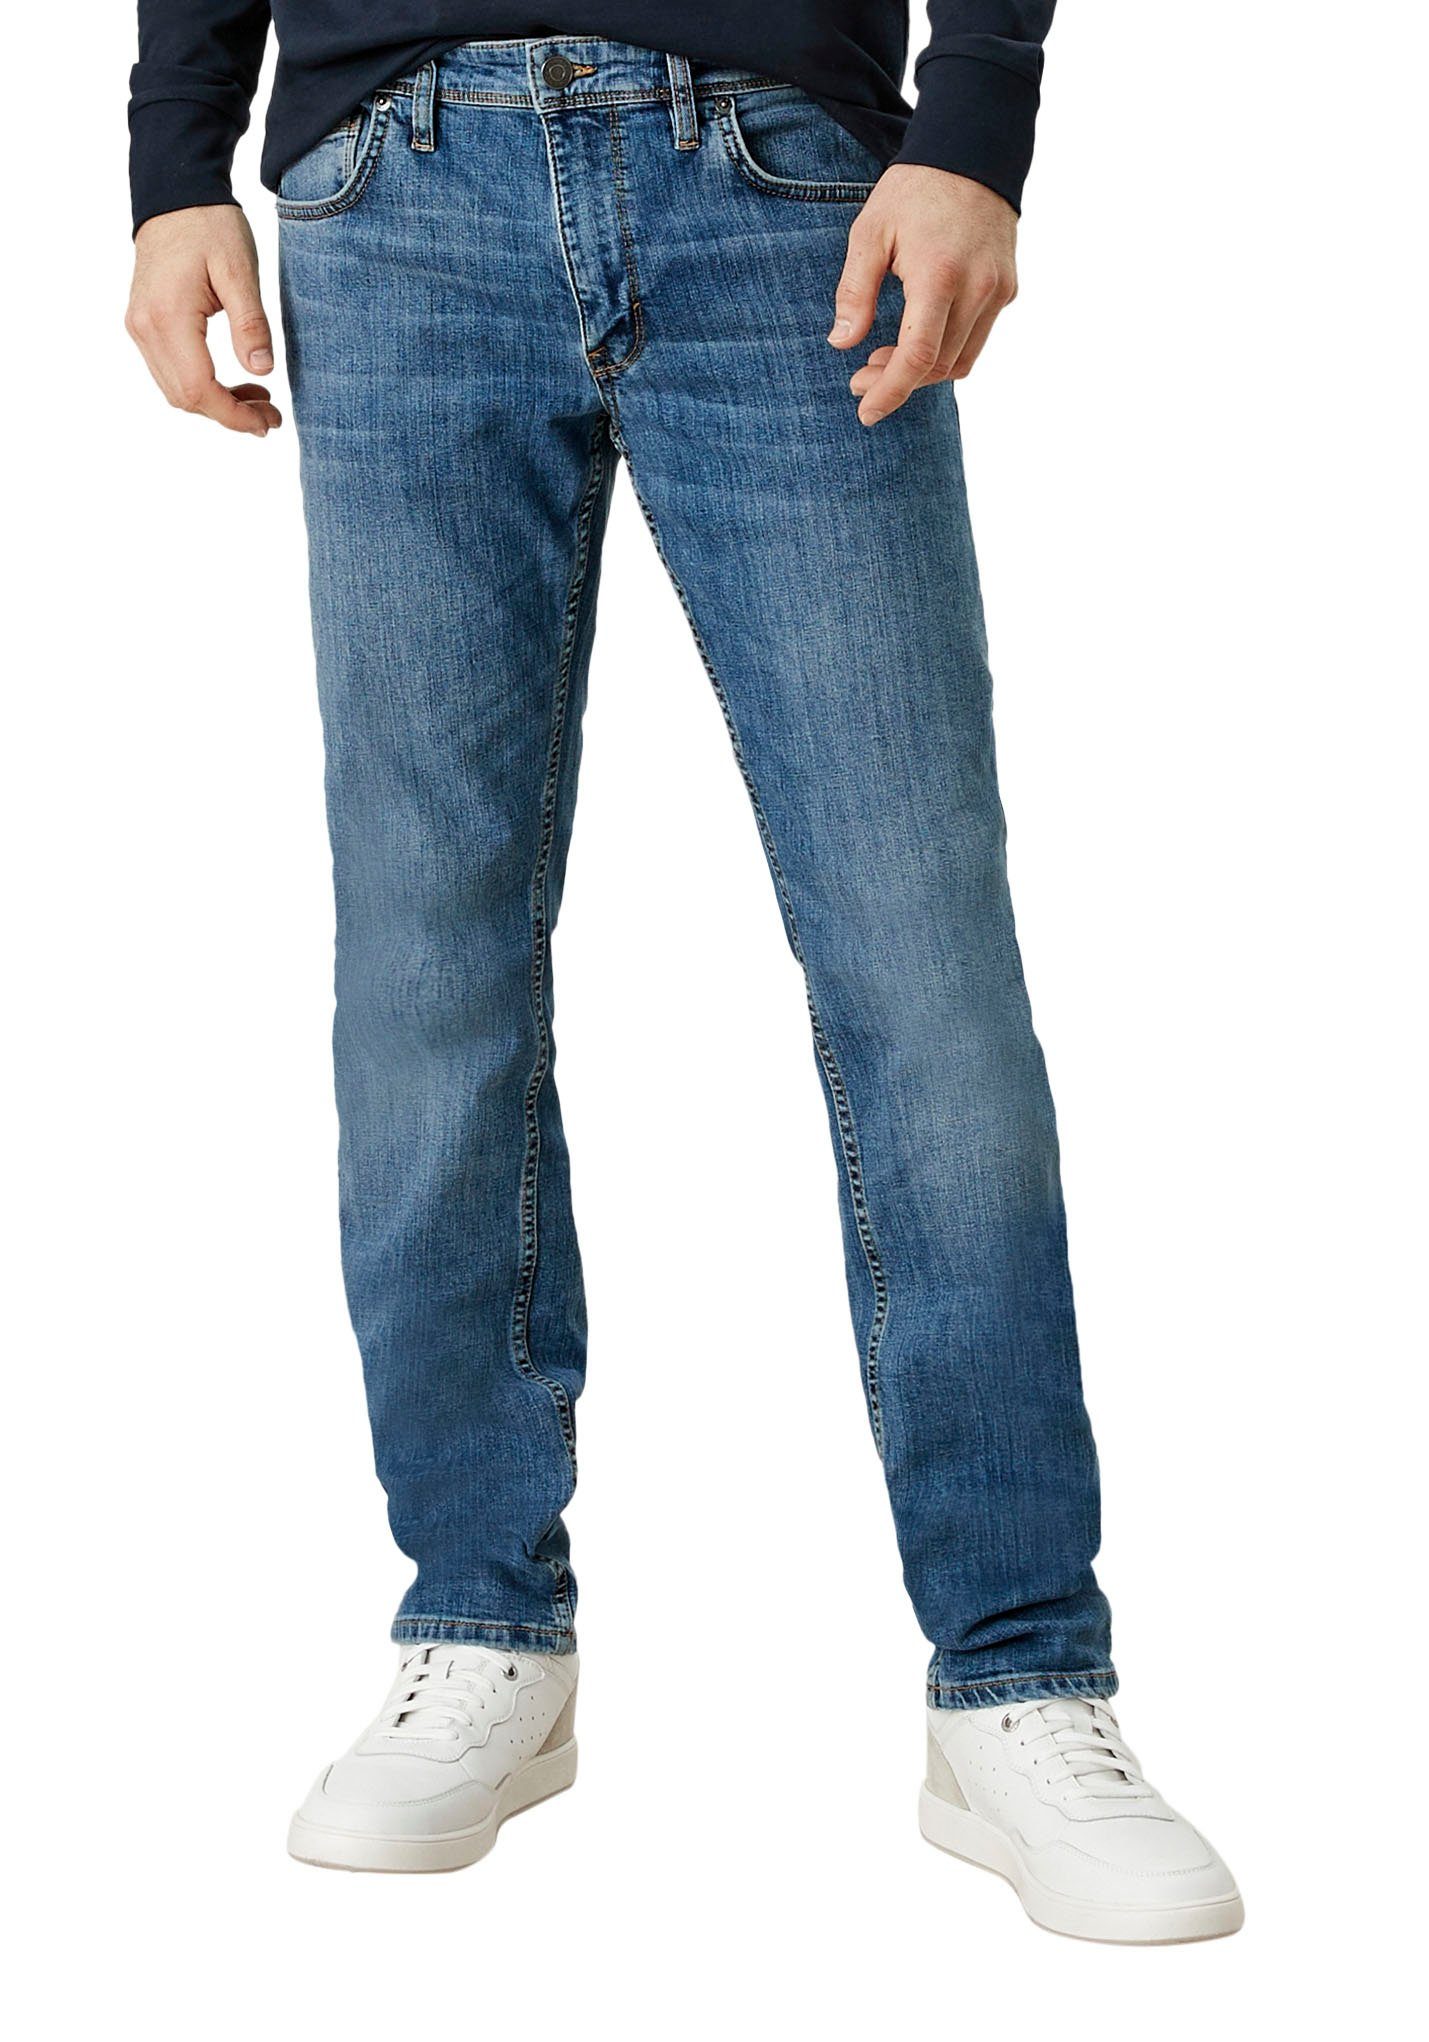 authentischer durch Elasthananteil Waschung, Anpassungsfähig s.Oliver mit 5-Pocket-Jeans